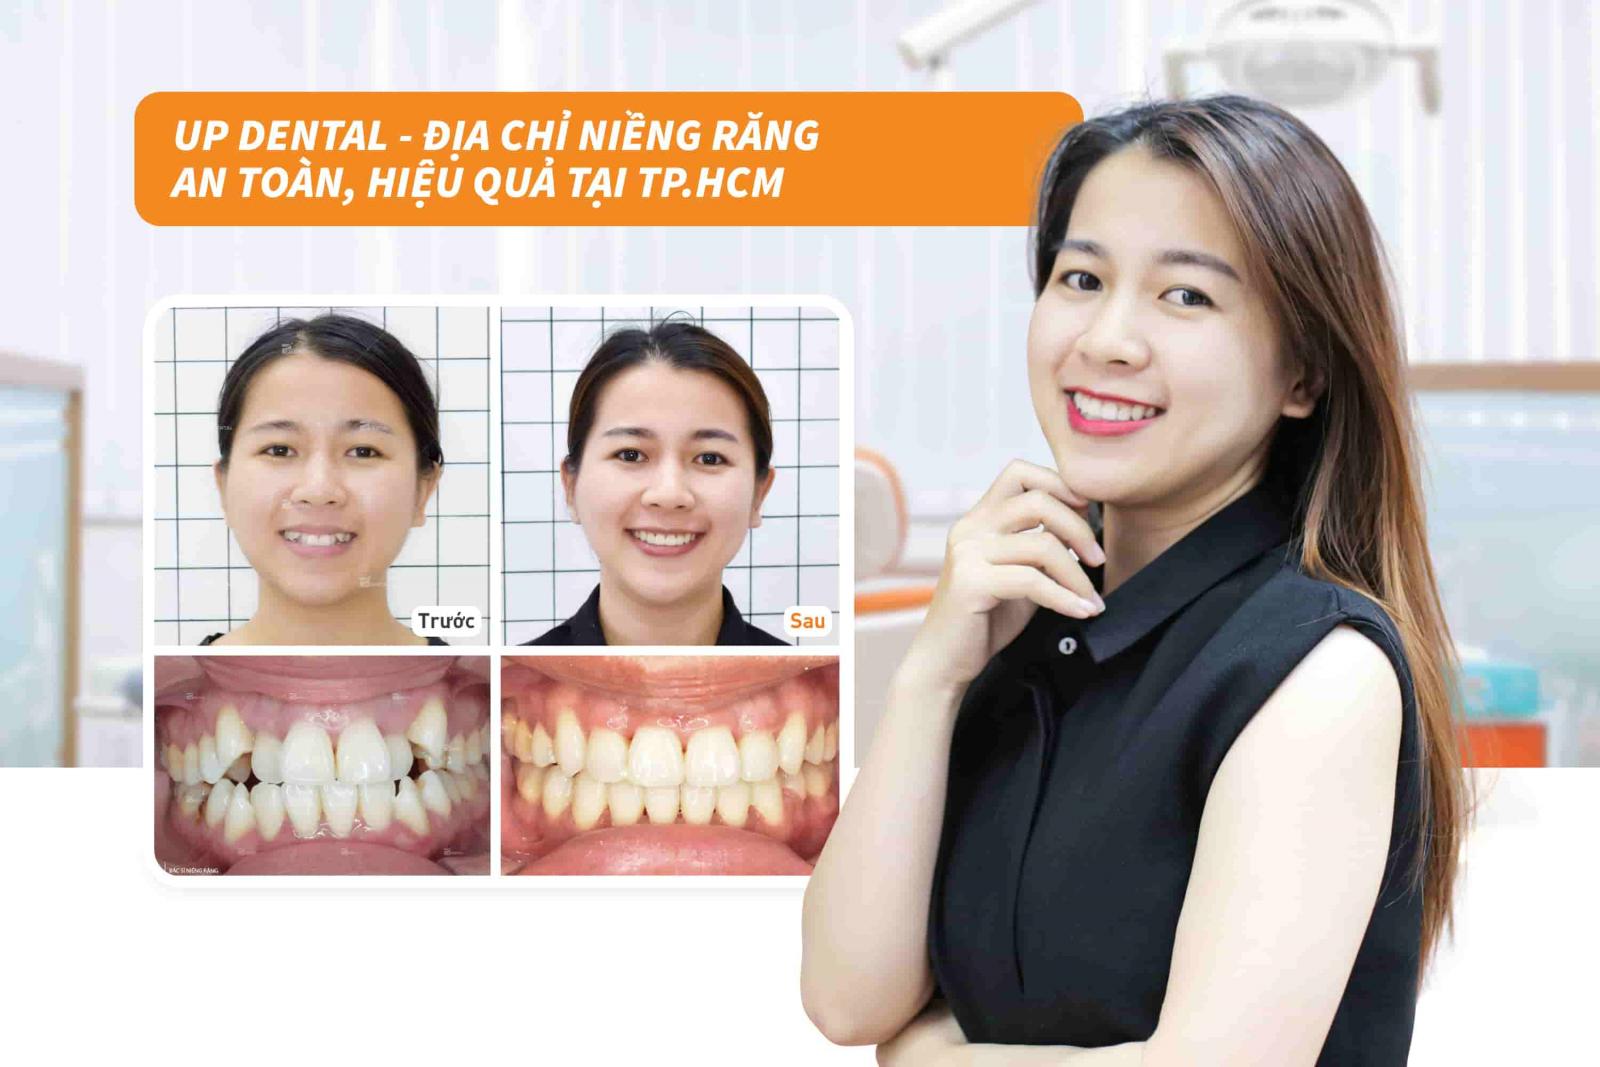 Up Dental địa chỉ niềng răng an toàn, hiệu quả tại TP.HCM